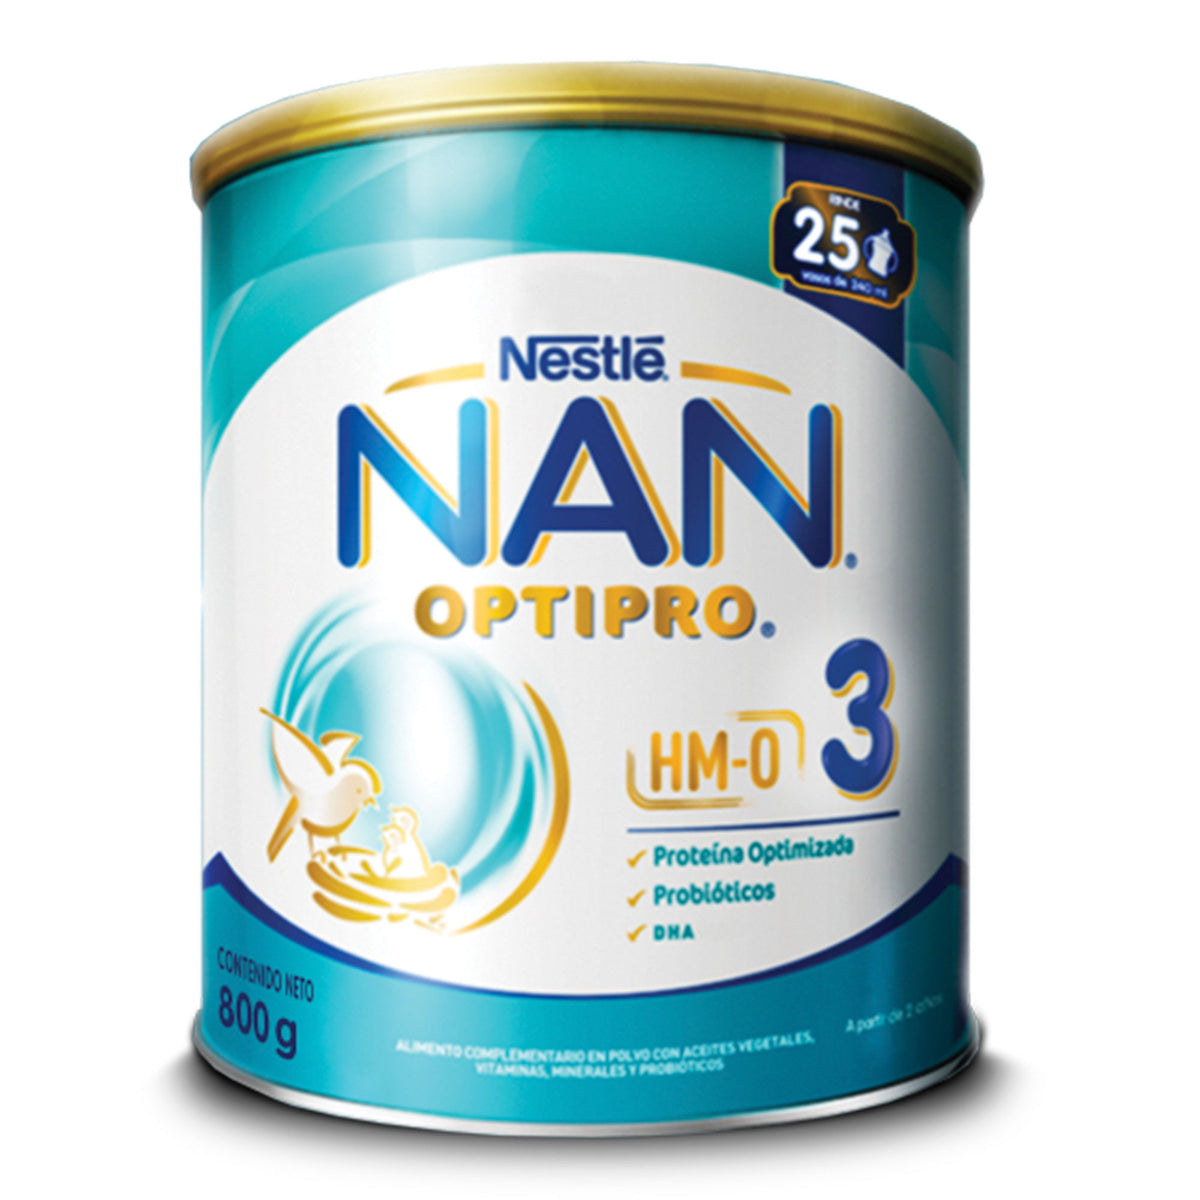 Nan Optipro 1 800 Gr Azul - Comprar ahora.